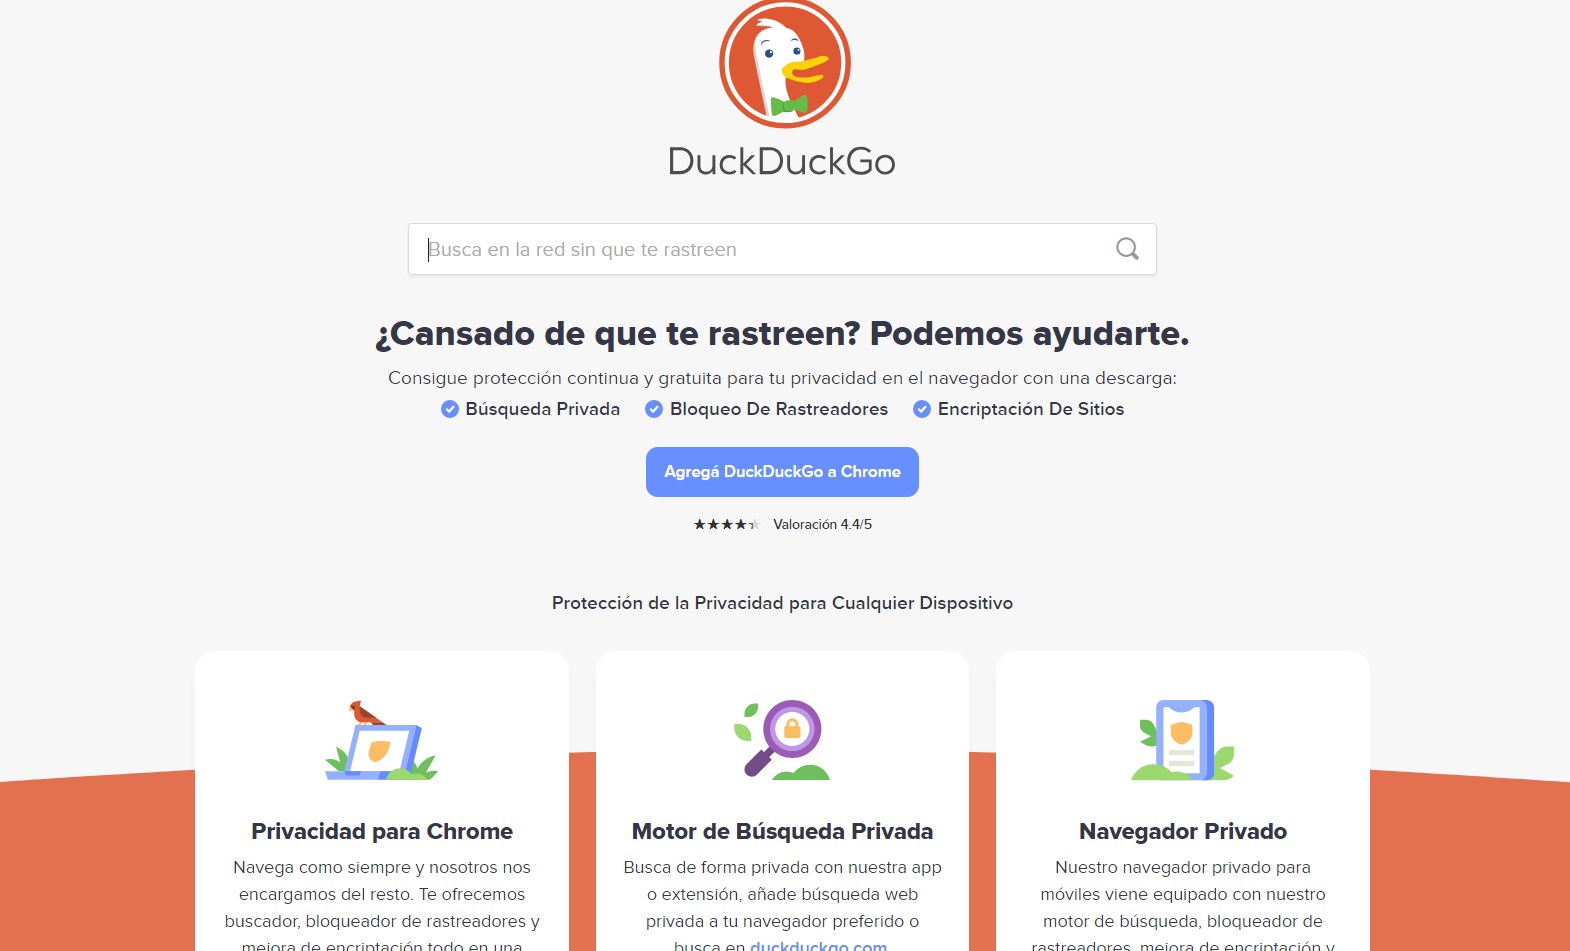 04.-DuckDuckGo-motor-de-busqueda.jpg